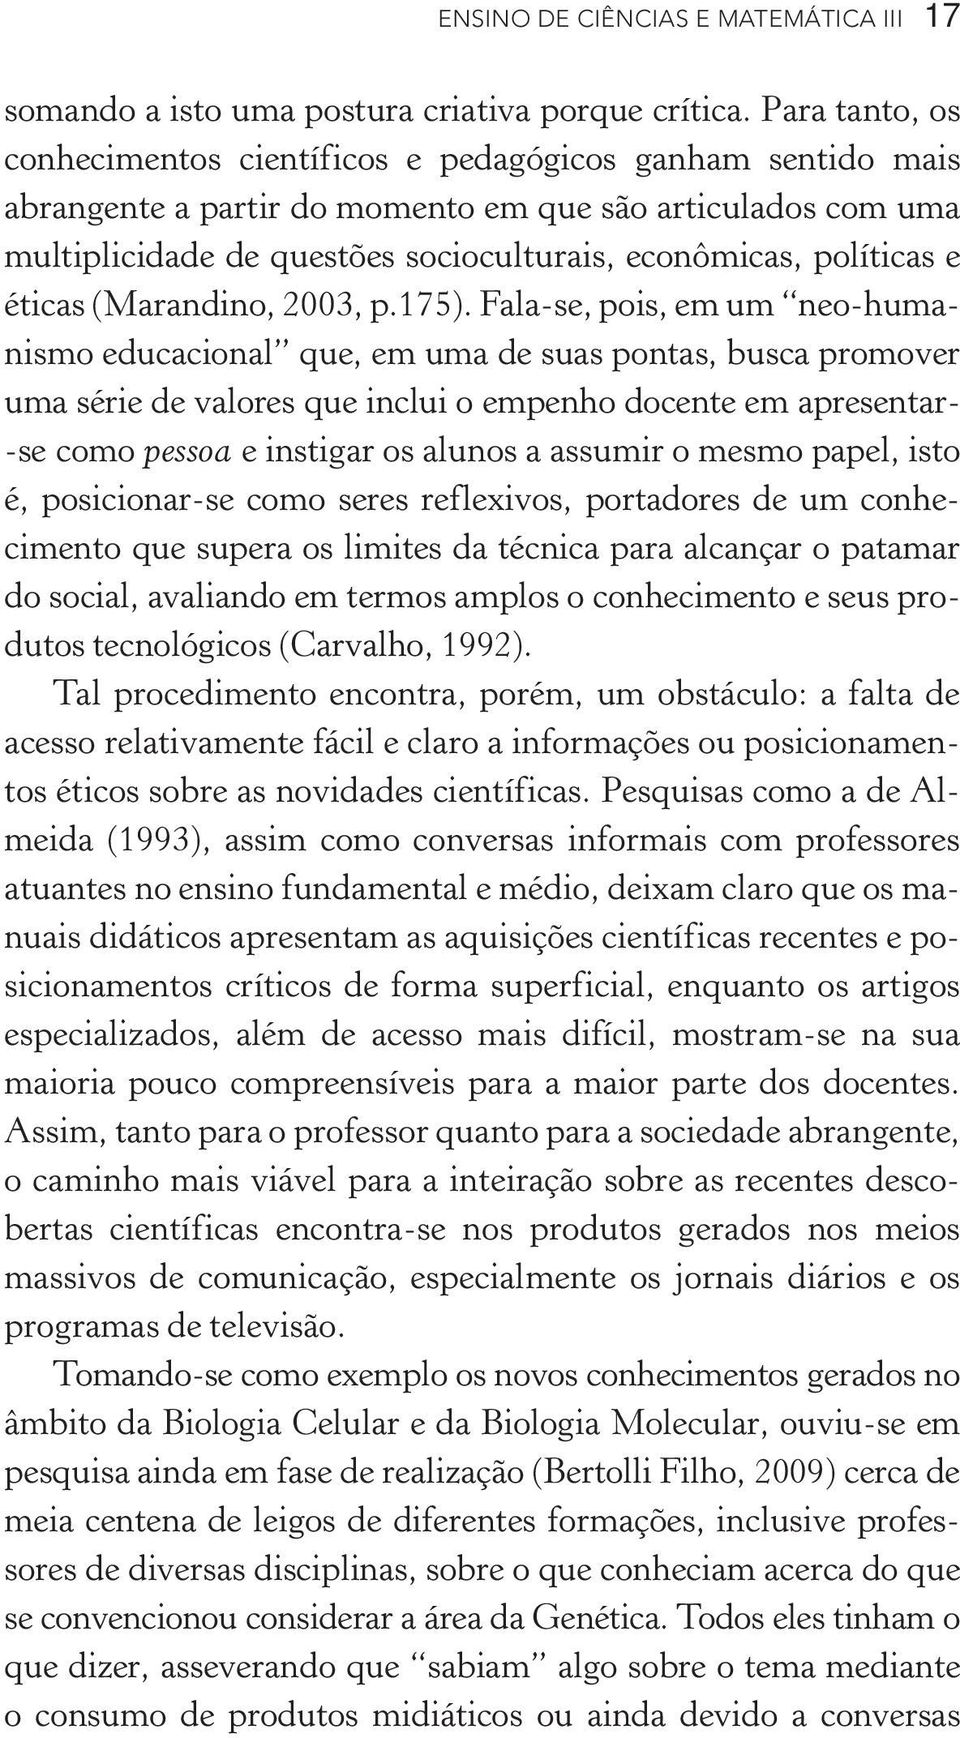 políticas e éticas (Marandino, 2003, p.175).